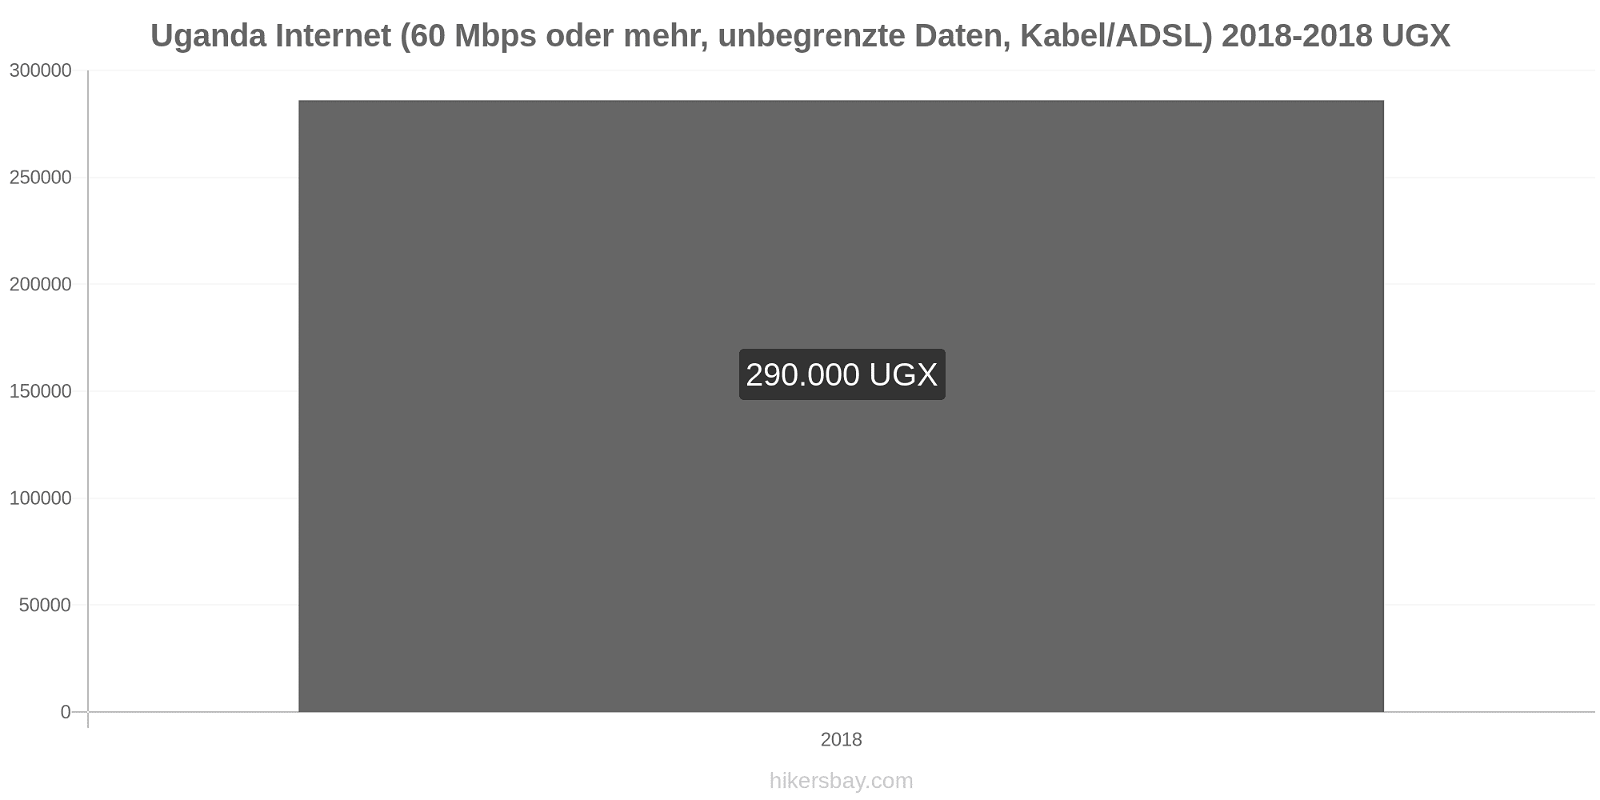 Uganda Preisänderungen Internet (60 Mbps oder mehr, unbegrenzte Daten, Kabel/ADSL) hikersbay.com